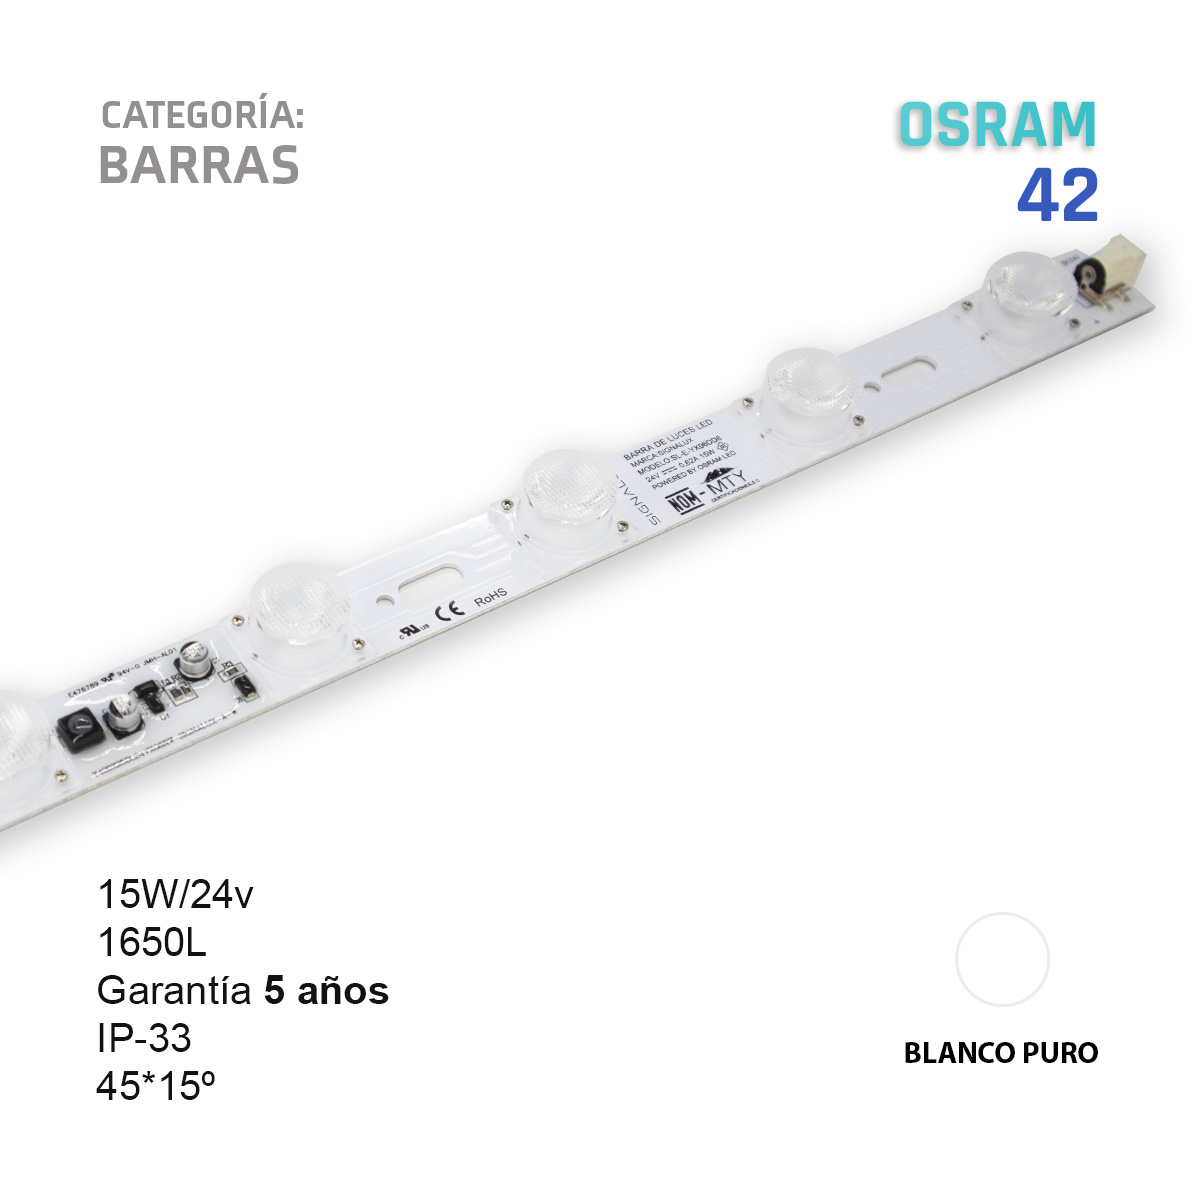 Barra LED Edgelite Osram 42